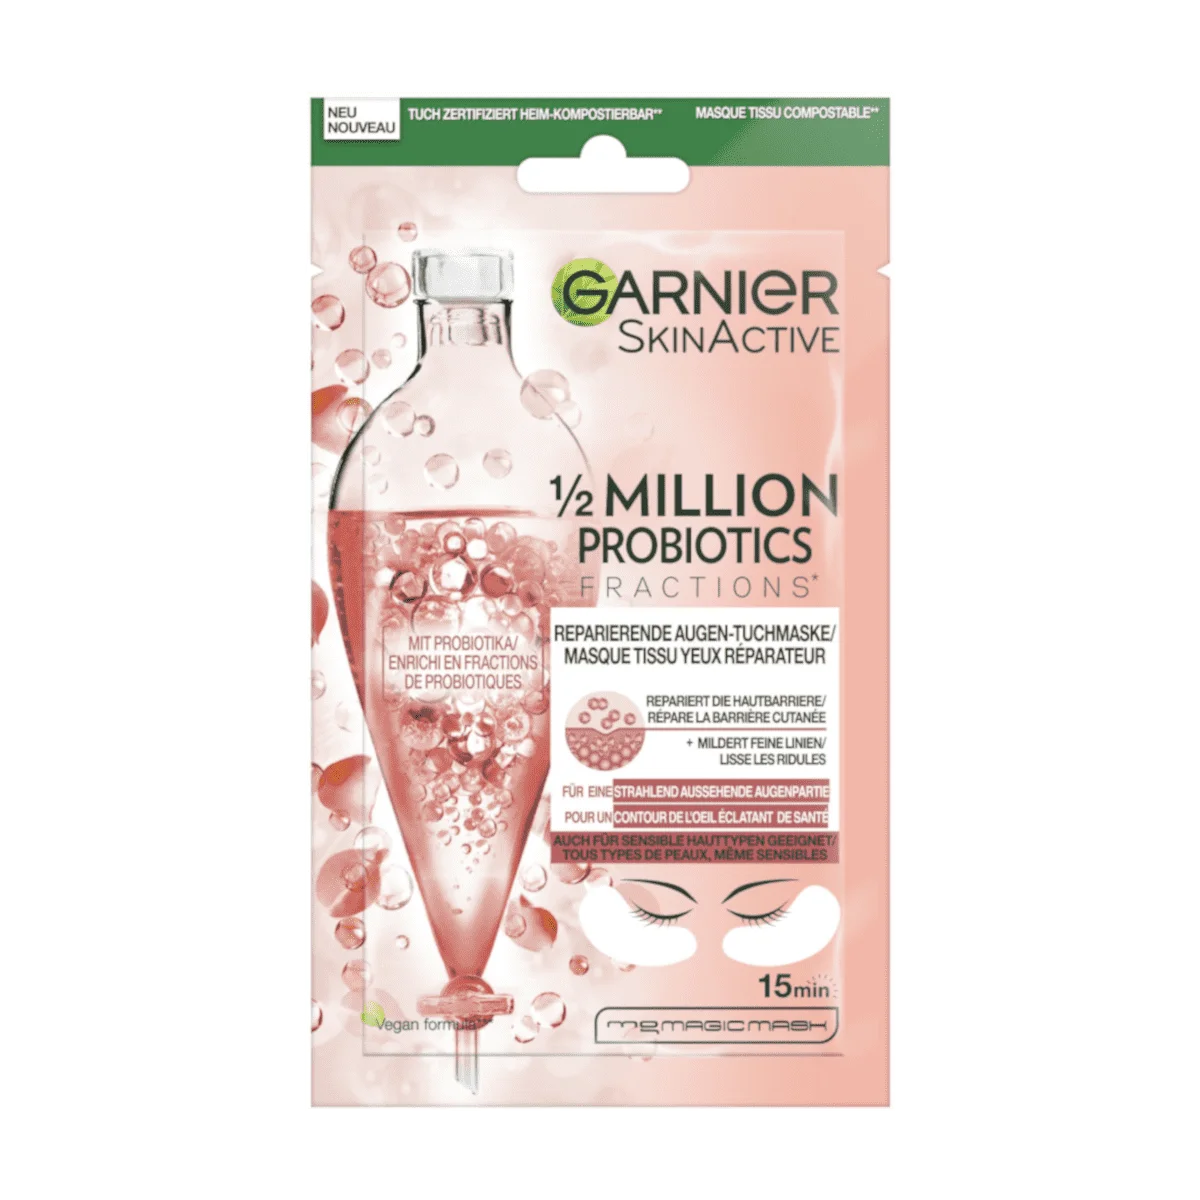 Garnier Skin Active Augentuchmaske 1/2 Million Probiotics, 1 Stk